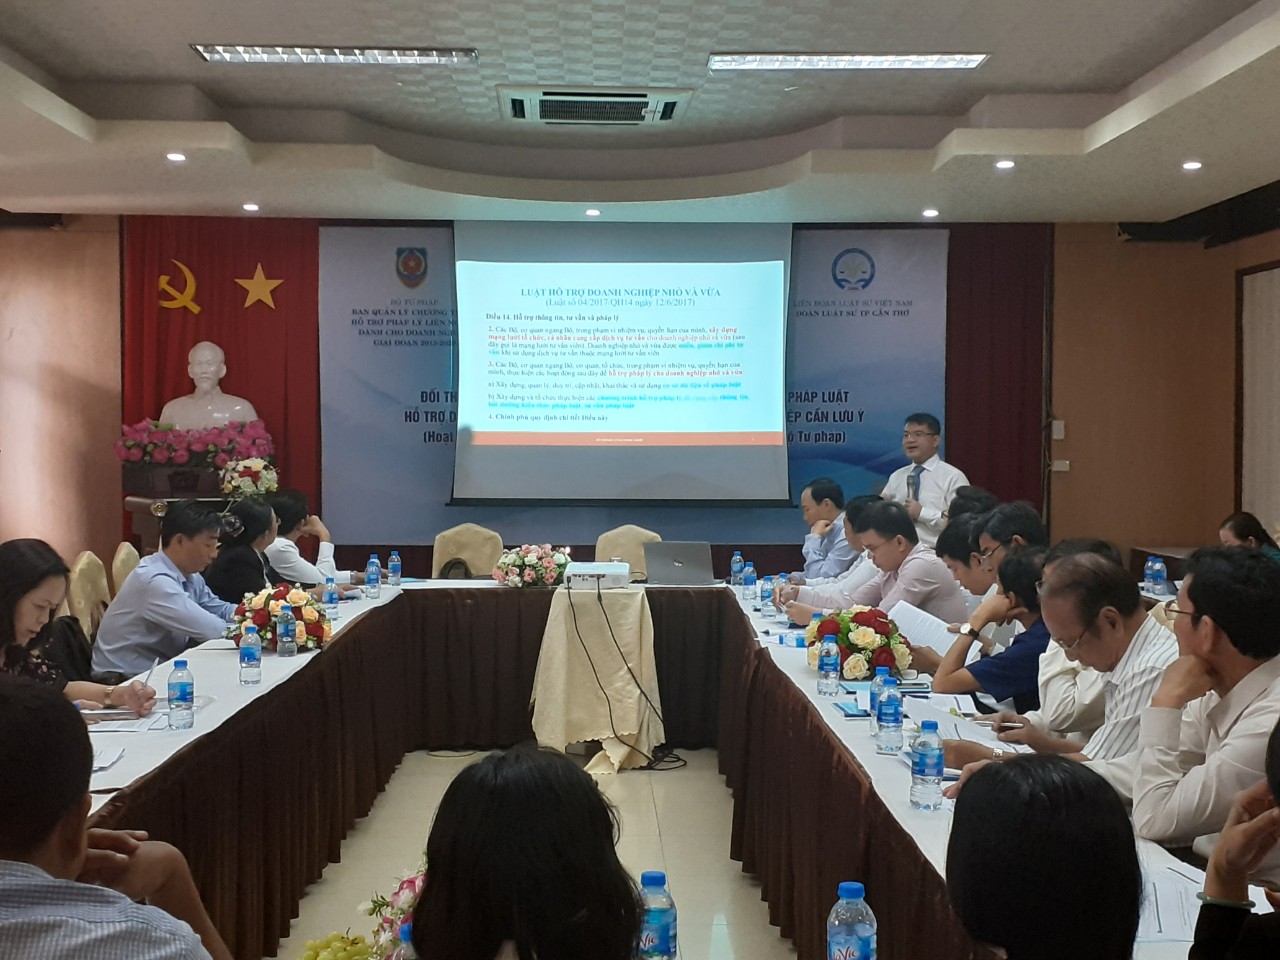 Trung tâm hỗ trợ pháp luật và phát triển nguồn nhân lực, Hiệp hội doanh nghiệp nhỏ và vừa Việt Nam tổ chức Hội nghị đối thoại vướng mắc trong thực tiễn thi hành chính sách, pháp luật hỗ trợ doanh nghiệp khởi nghiệp – những vấn đề pháp lý cần lưu ý